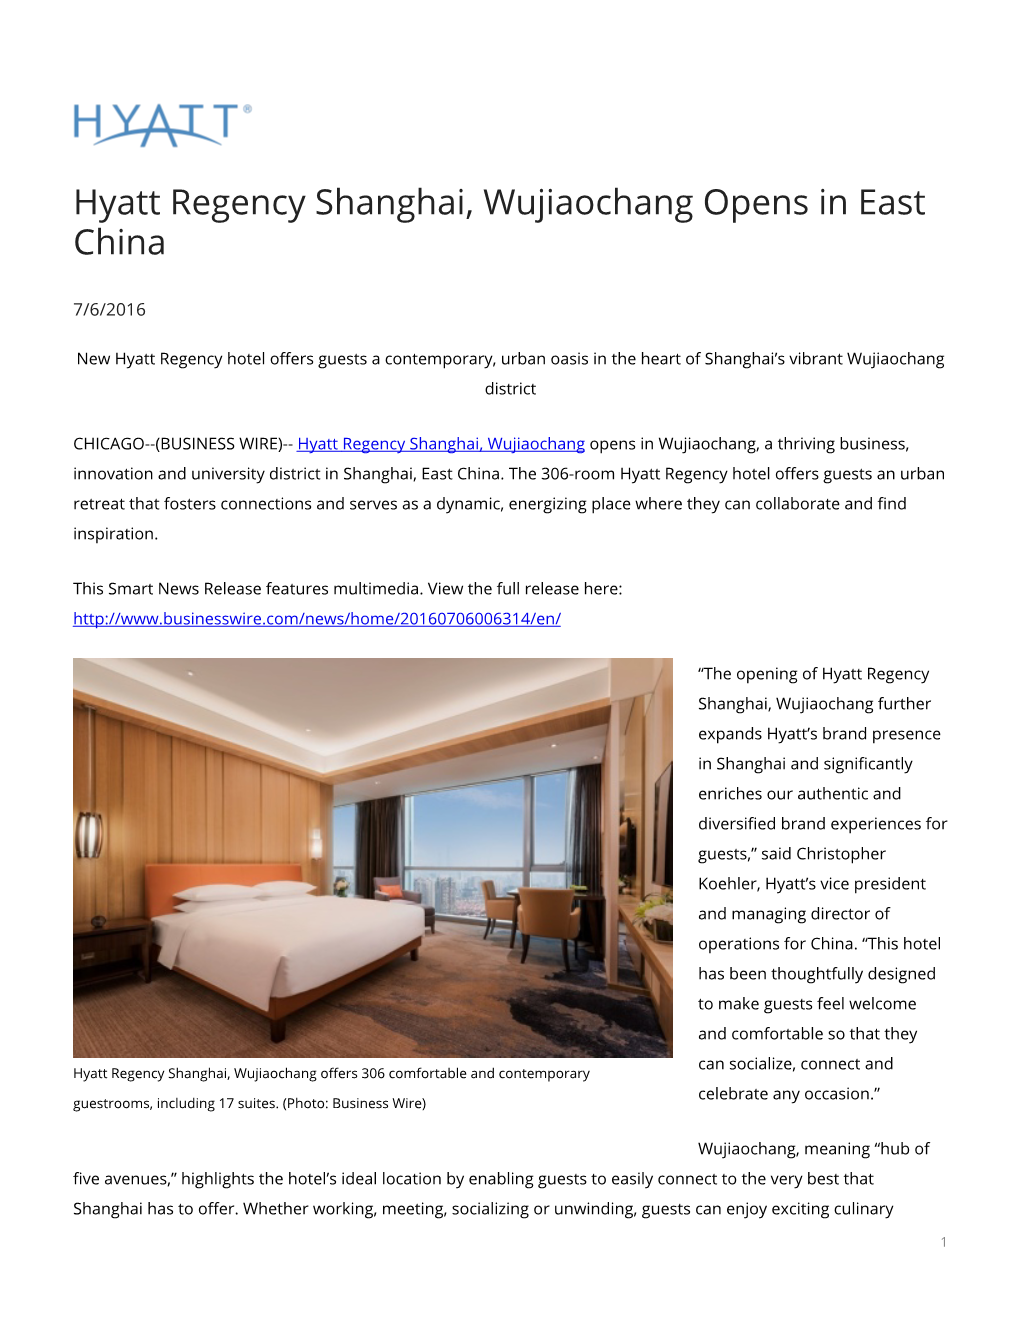 Hyatt Regency Shanghai, Wujiaochang Opens in East China